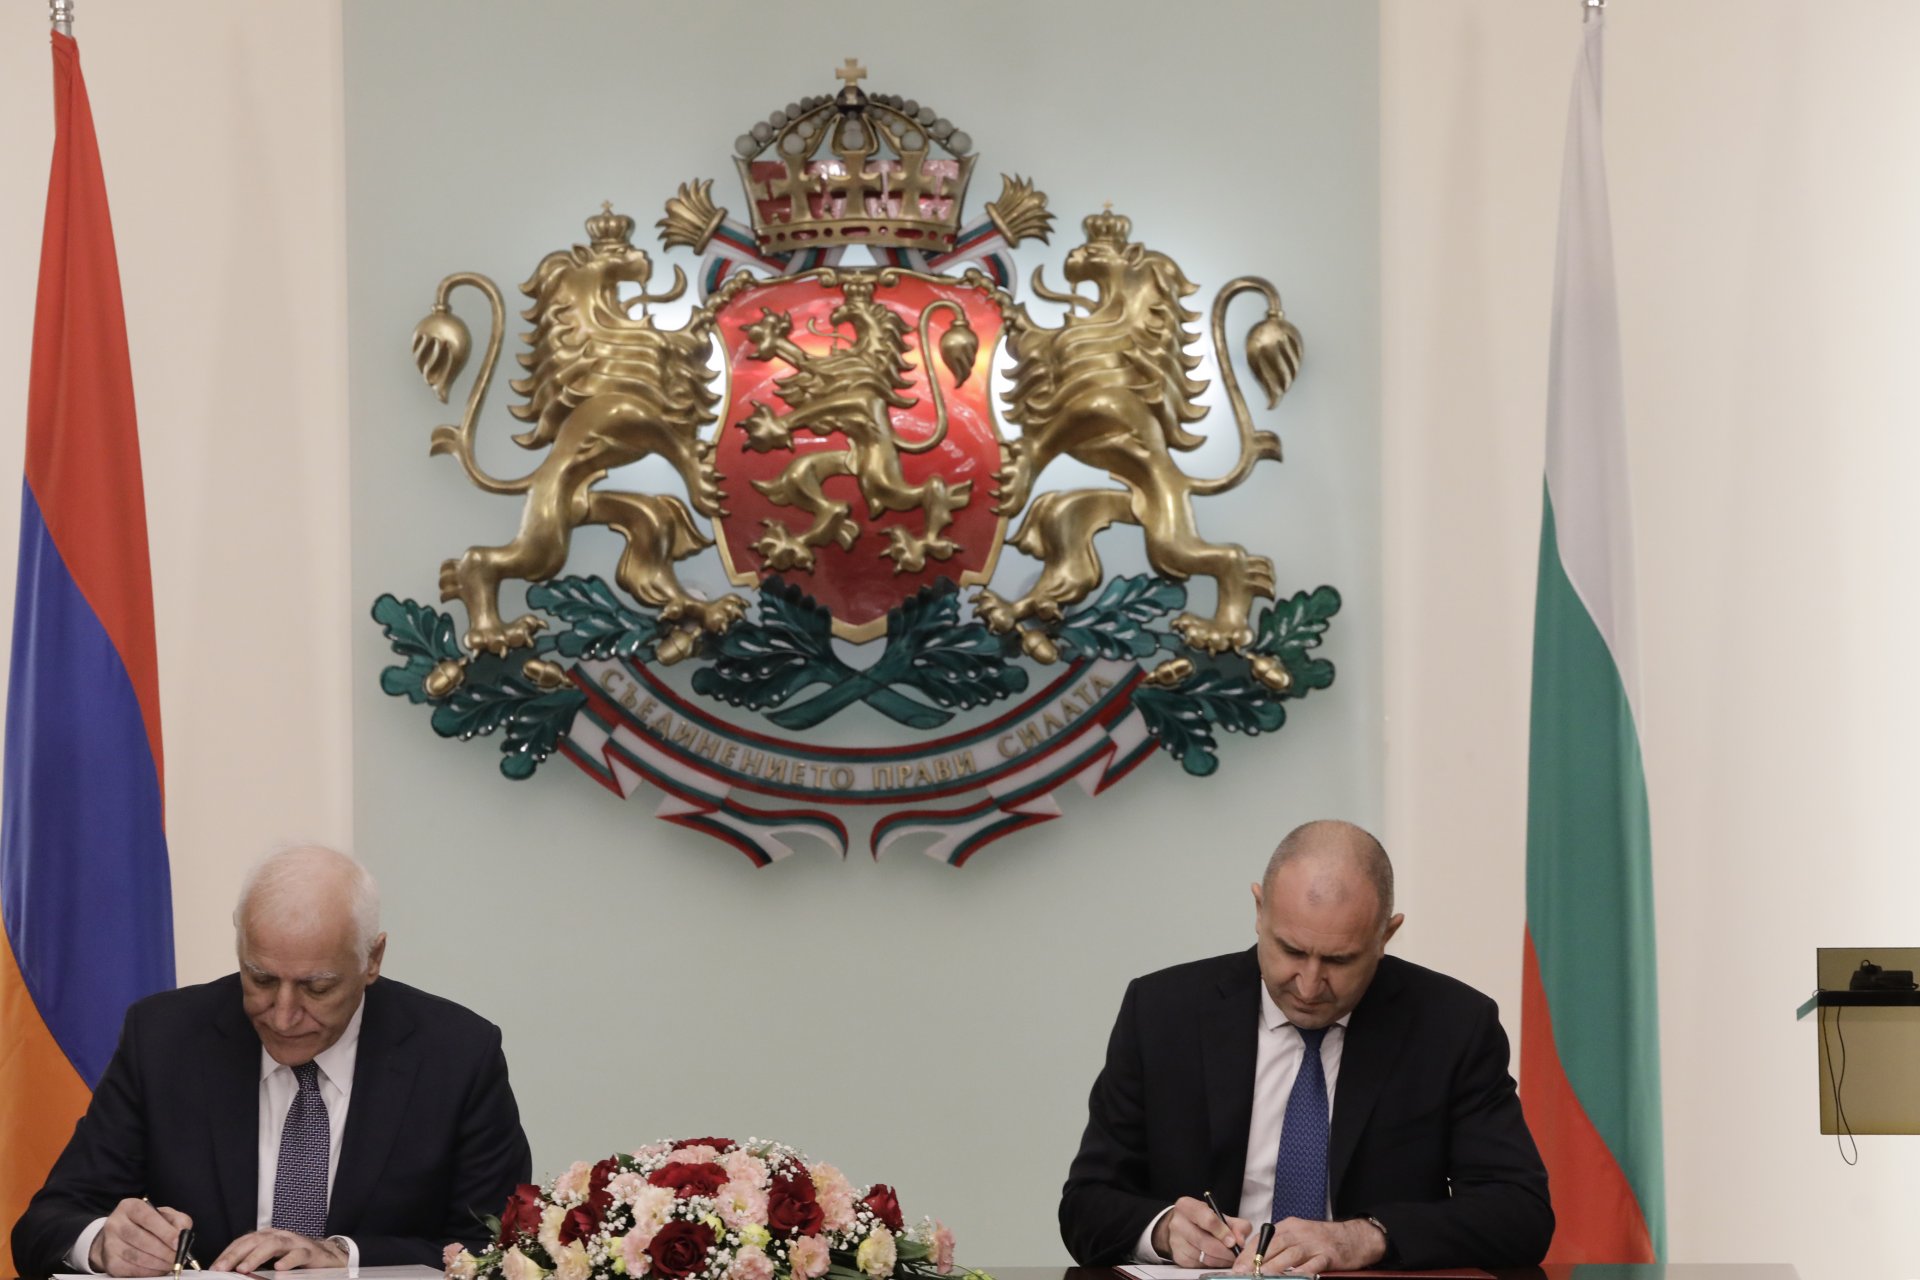 резидентът Румен Радев и президента на Армения Вахагн Хачатурян подписаха съвместна декларация във връзка с 30-ата годишнина от установяването на дипломатическите отношения между България и Армения